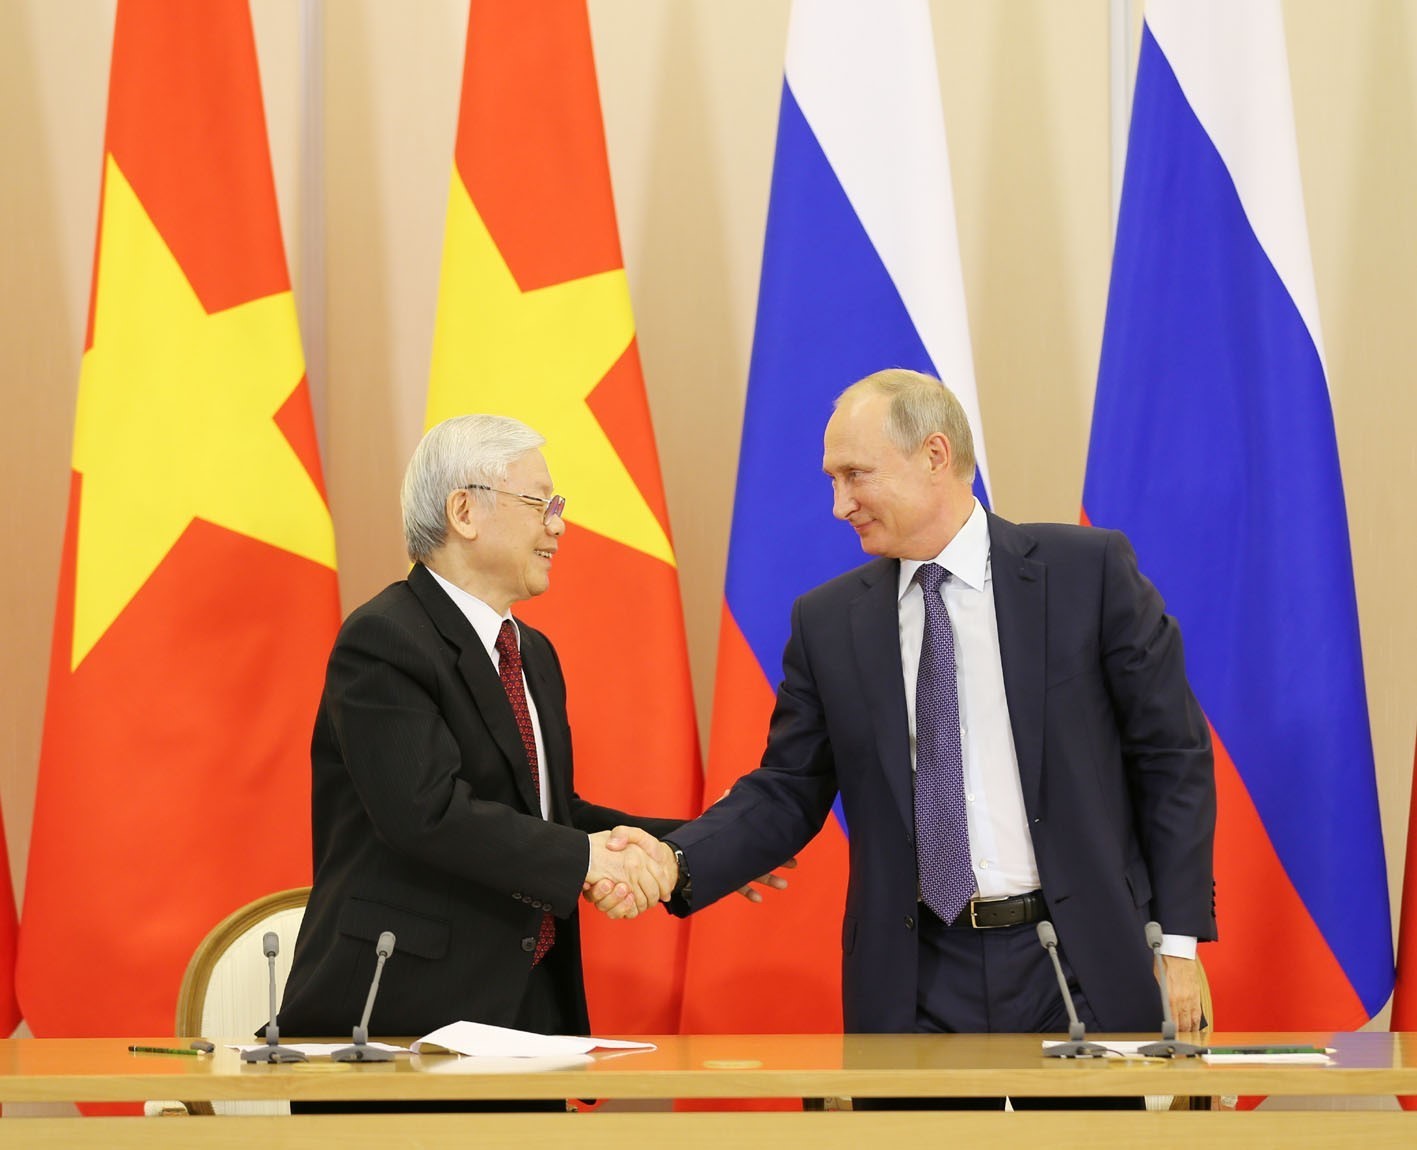 Tổng Bí thư, Chủ tịch nước trao đổi thư với Tổng thống Vladimir Putin- Ảnh 1.